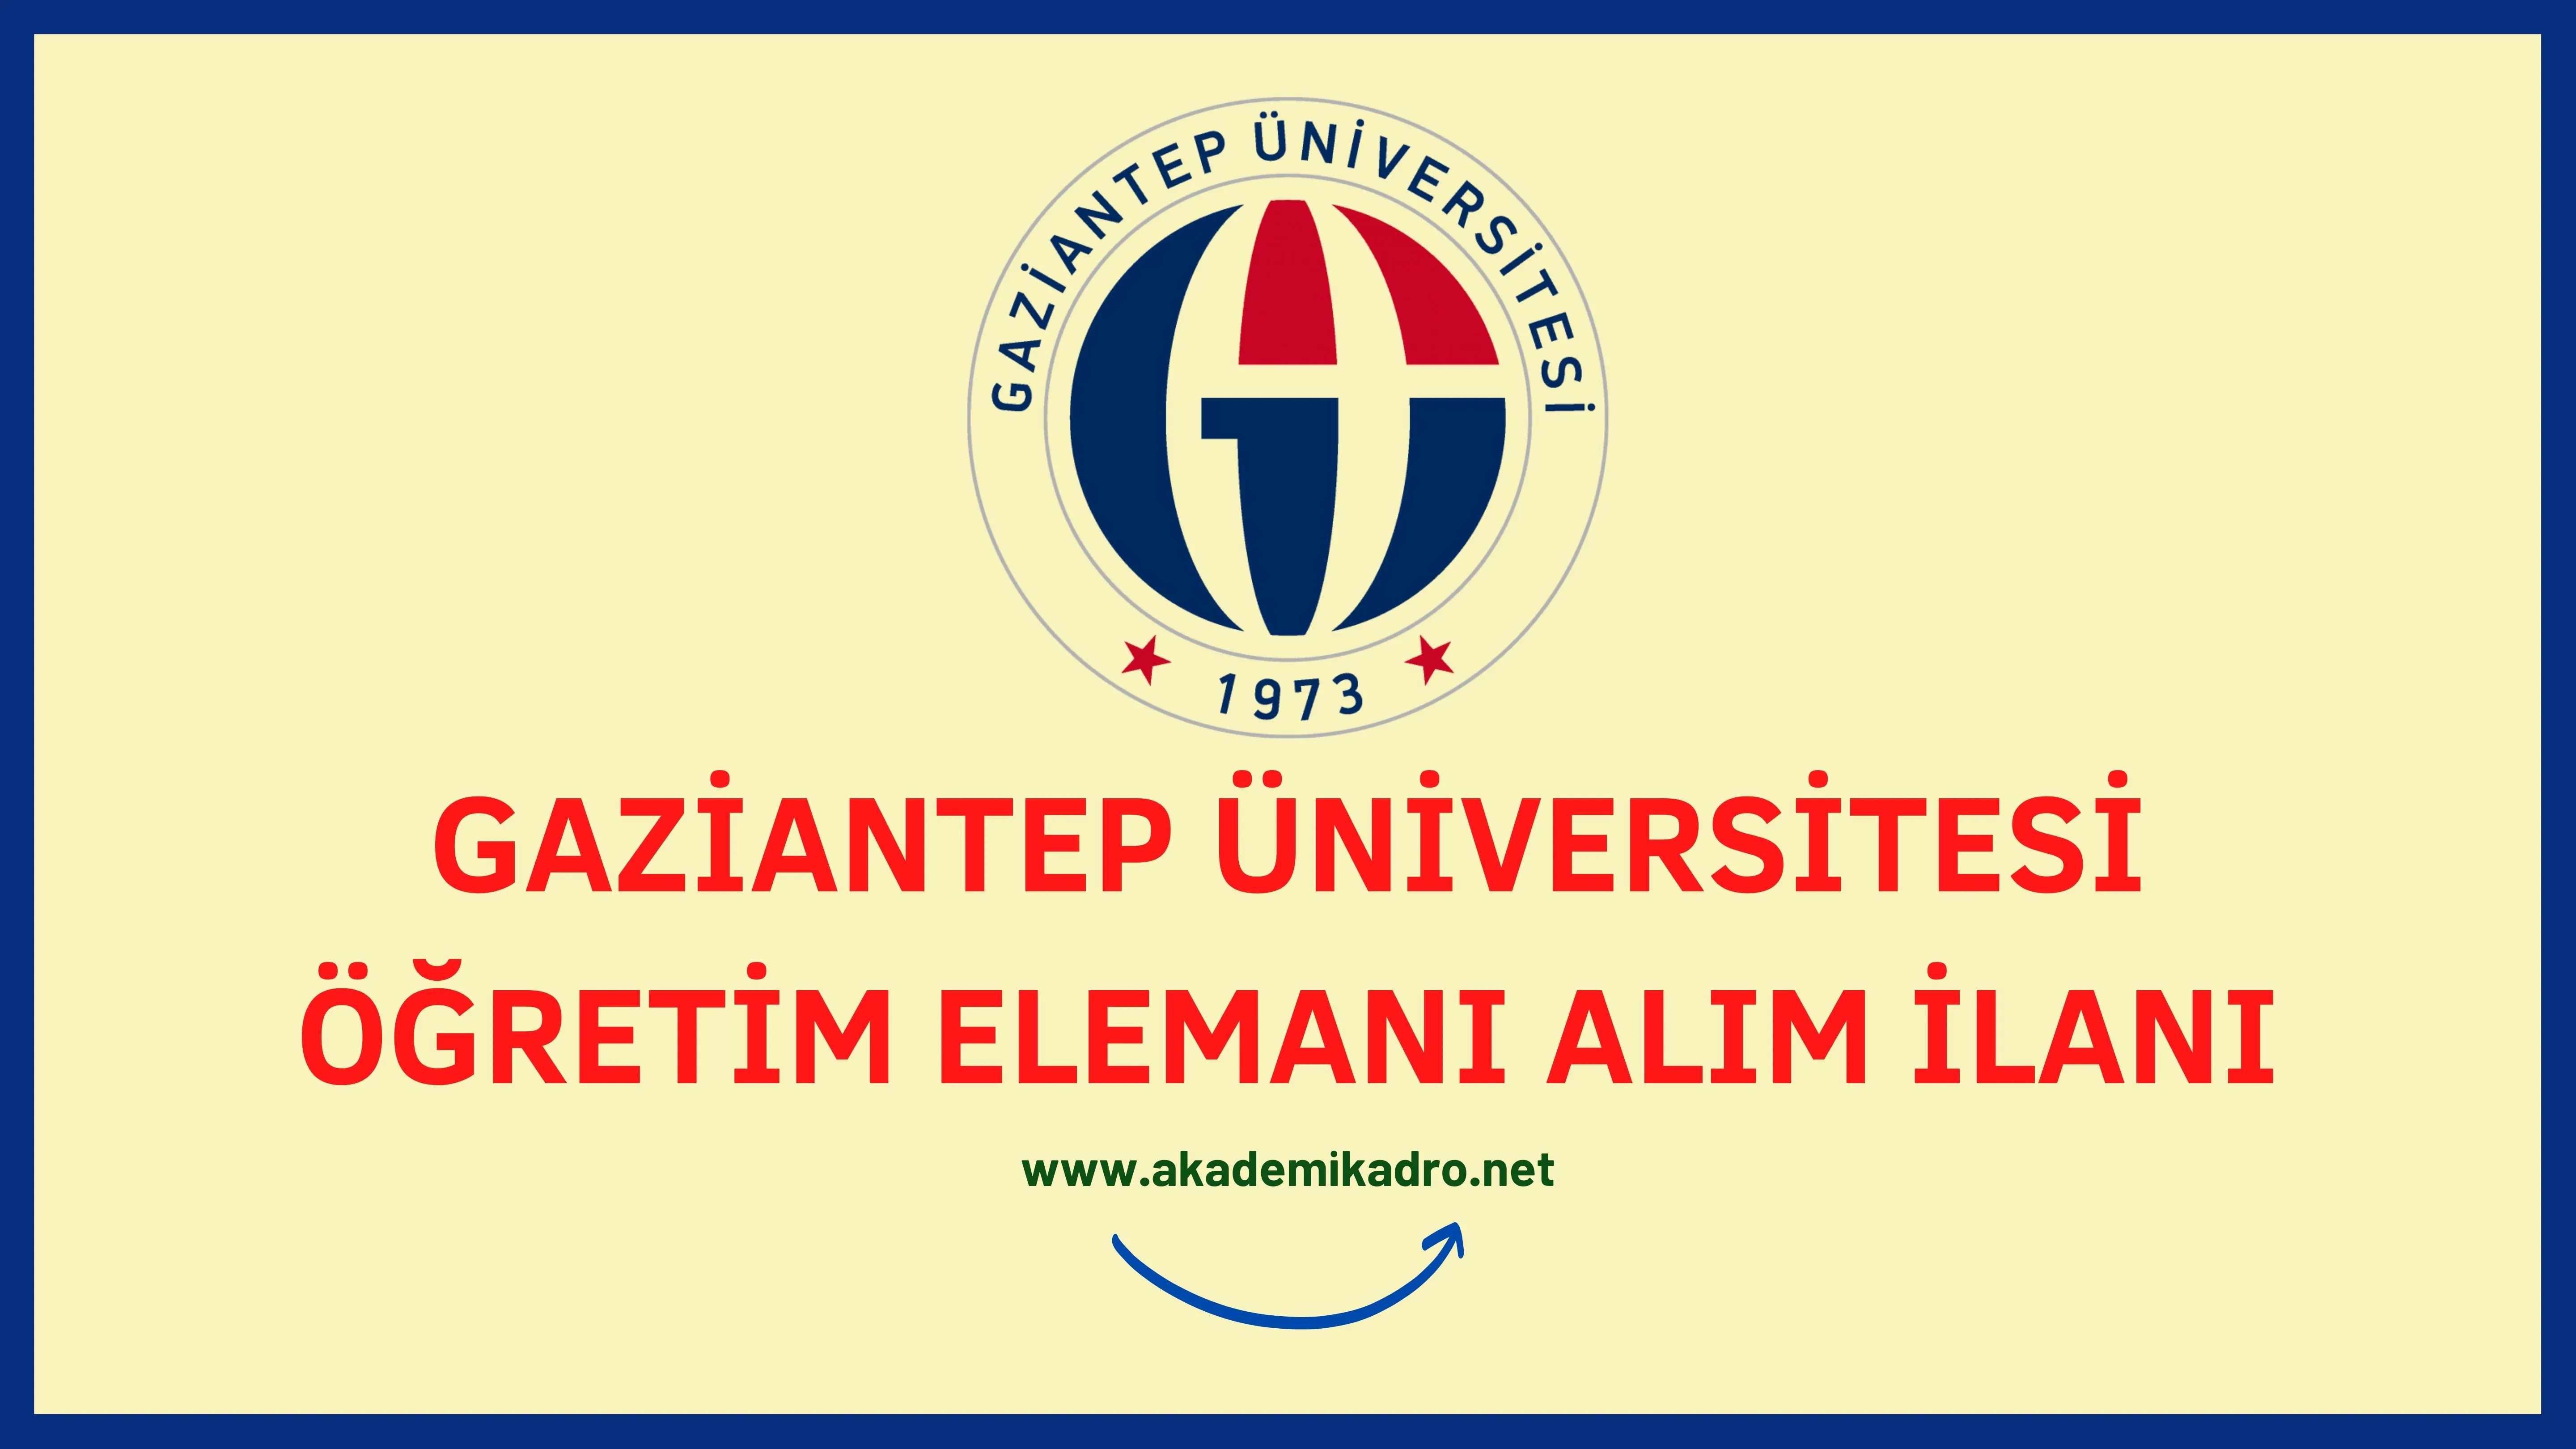 Gaziantep Üniversitesi 15 Öğretim üyesi, 14 Araştırma görevlisi ve 3 Öğretim görevlisi alacaktır. Son başvuru tarihi 11 Kasım 2022